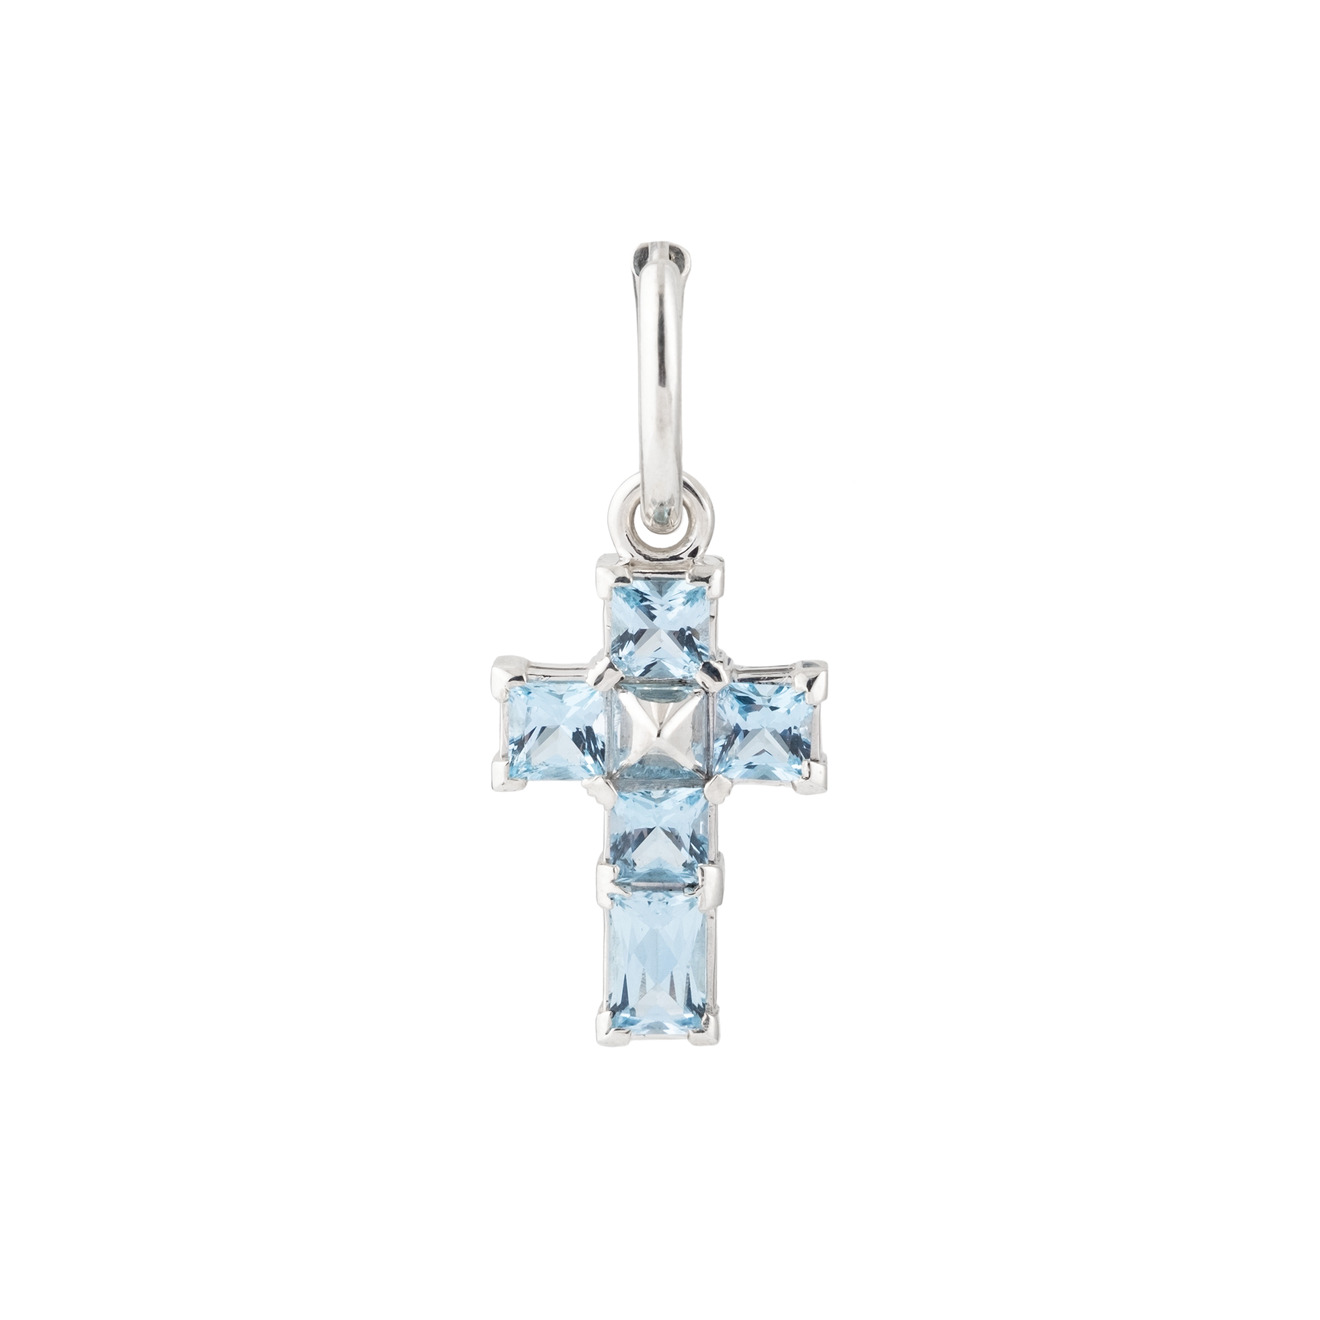 Opus Jewelry Моносерьга из серебра Net Cross Earring с топазом opus jewelry моносерьга из серебра net cross earring с хризолитом